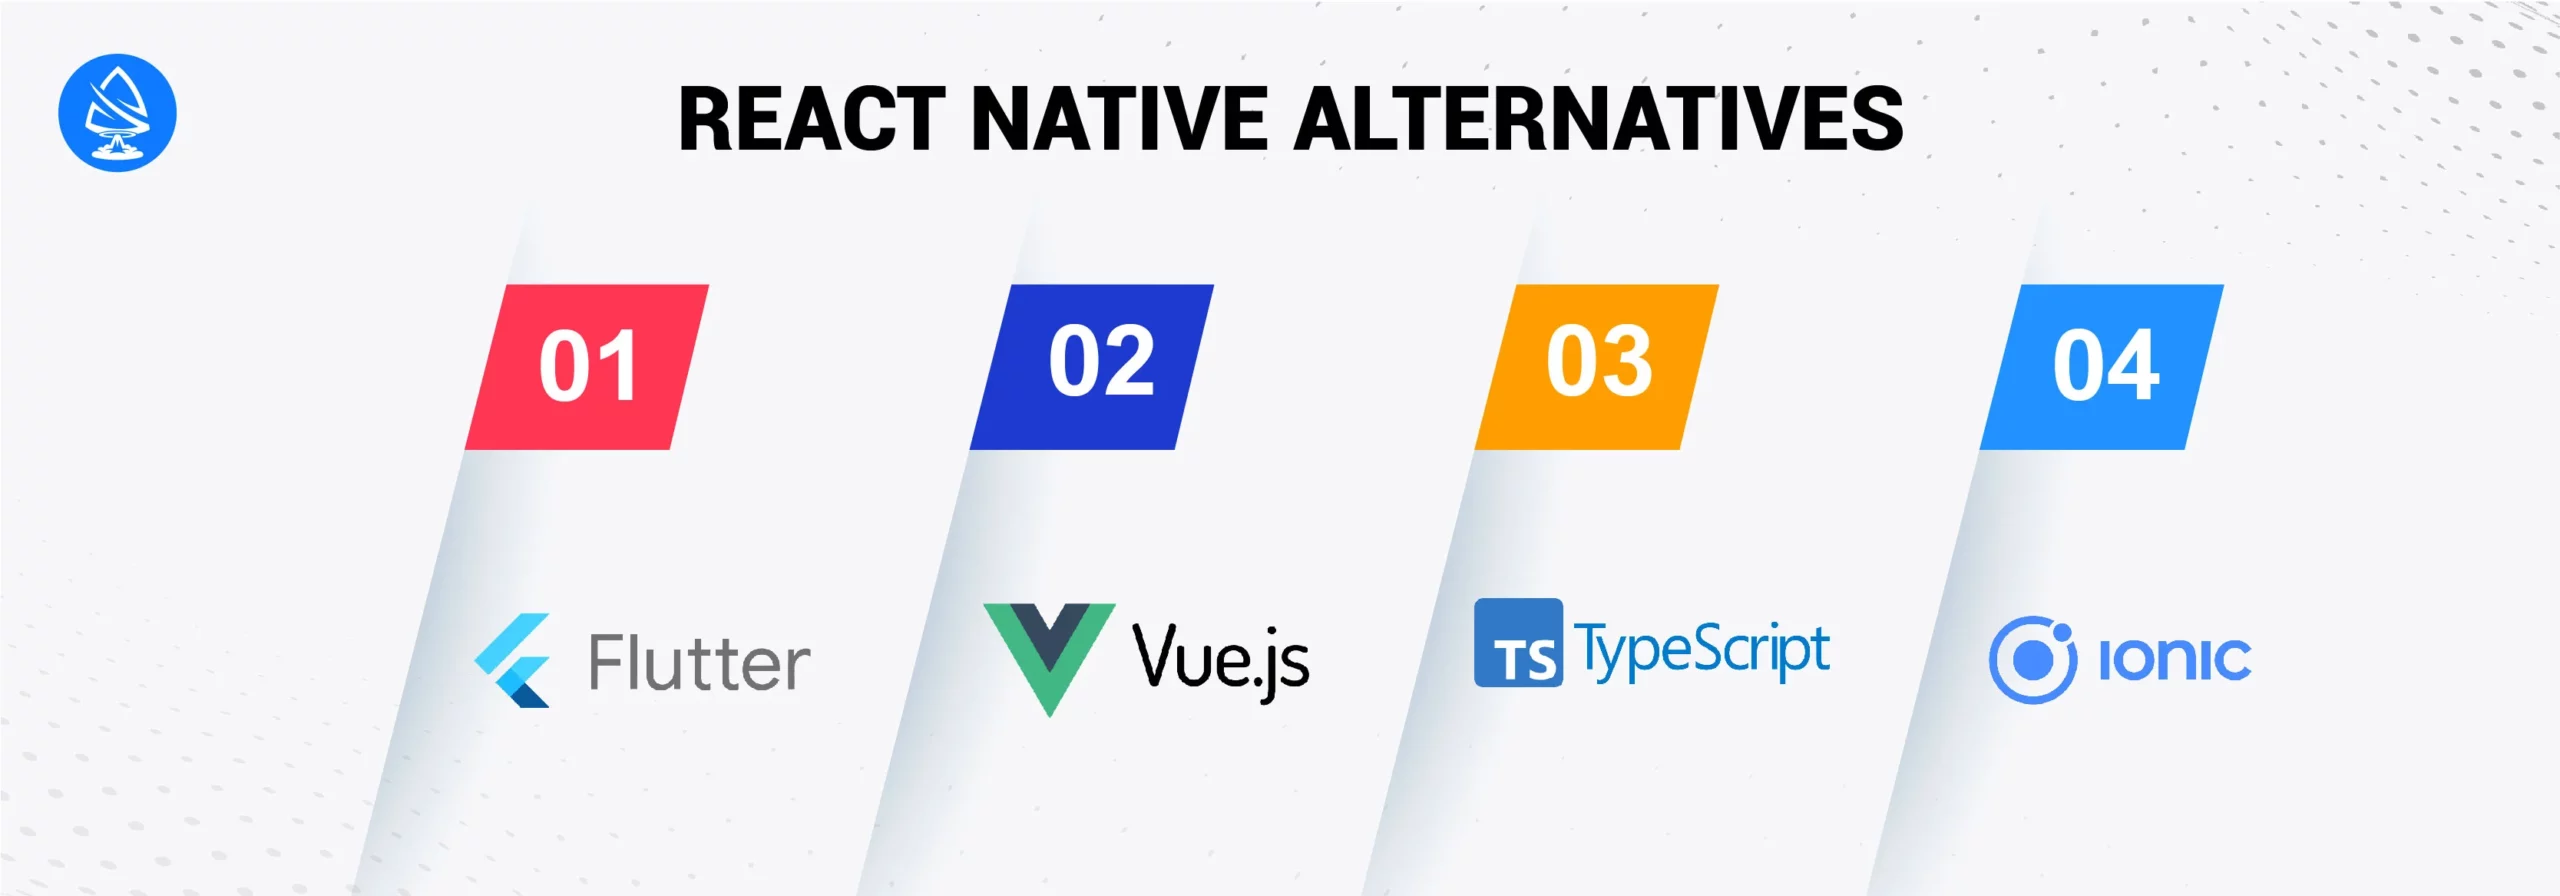 React Native Alternatives for App Development